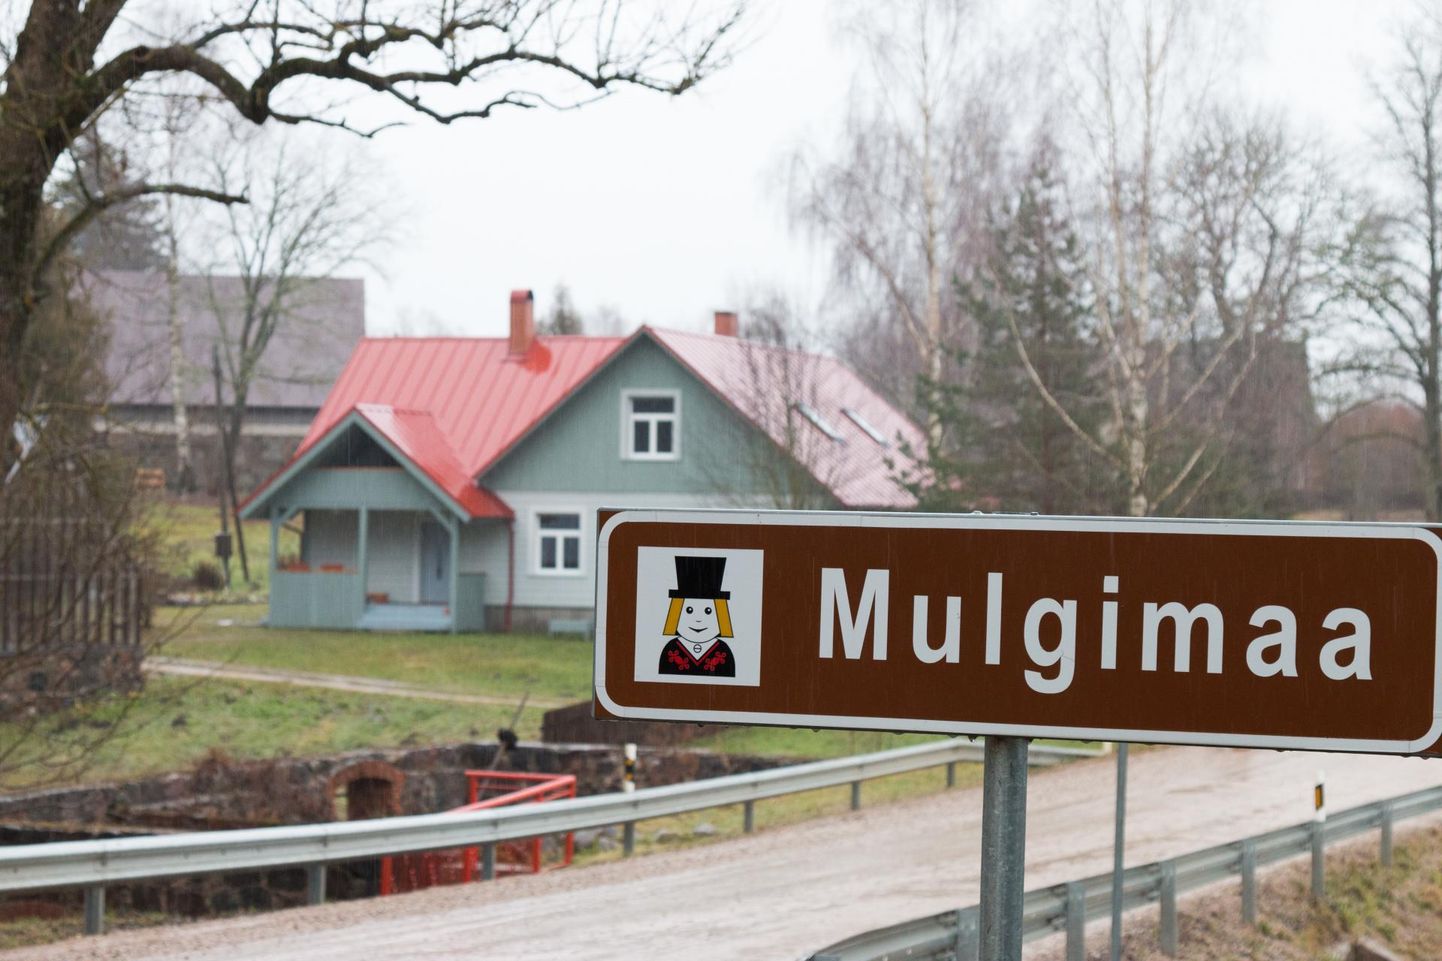 Mulgimaa on kultuuriajalooline piirkond Lõuna-Eestis, mis koosneb endistest Tarvastu, Paistu, Halliste, Karksi ja Helme kihelkondadest. Pilt illustratiivne